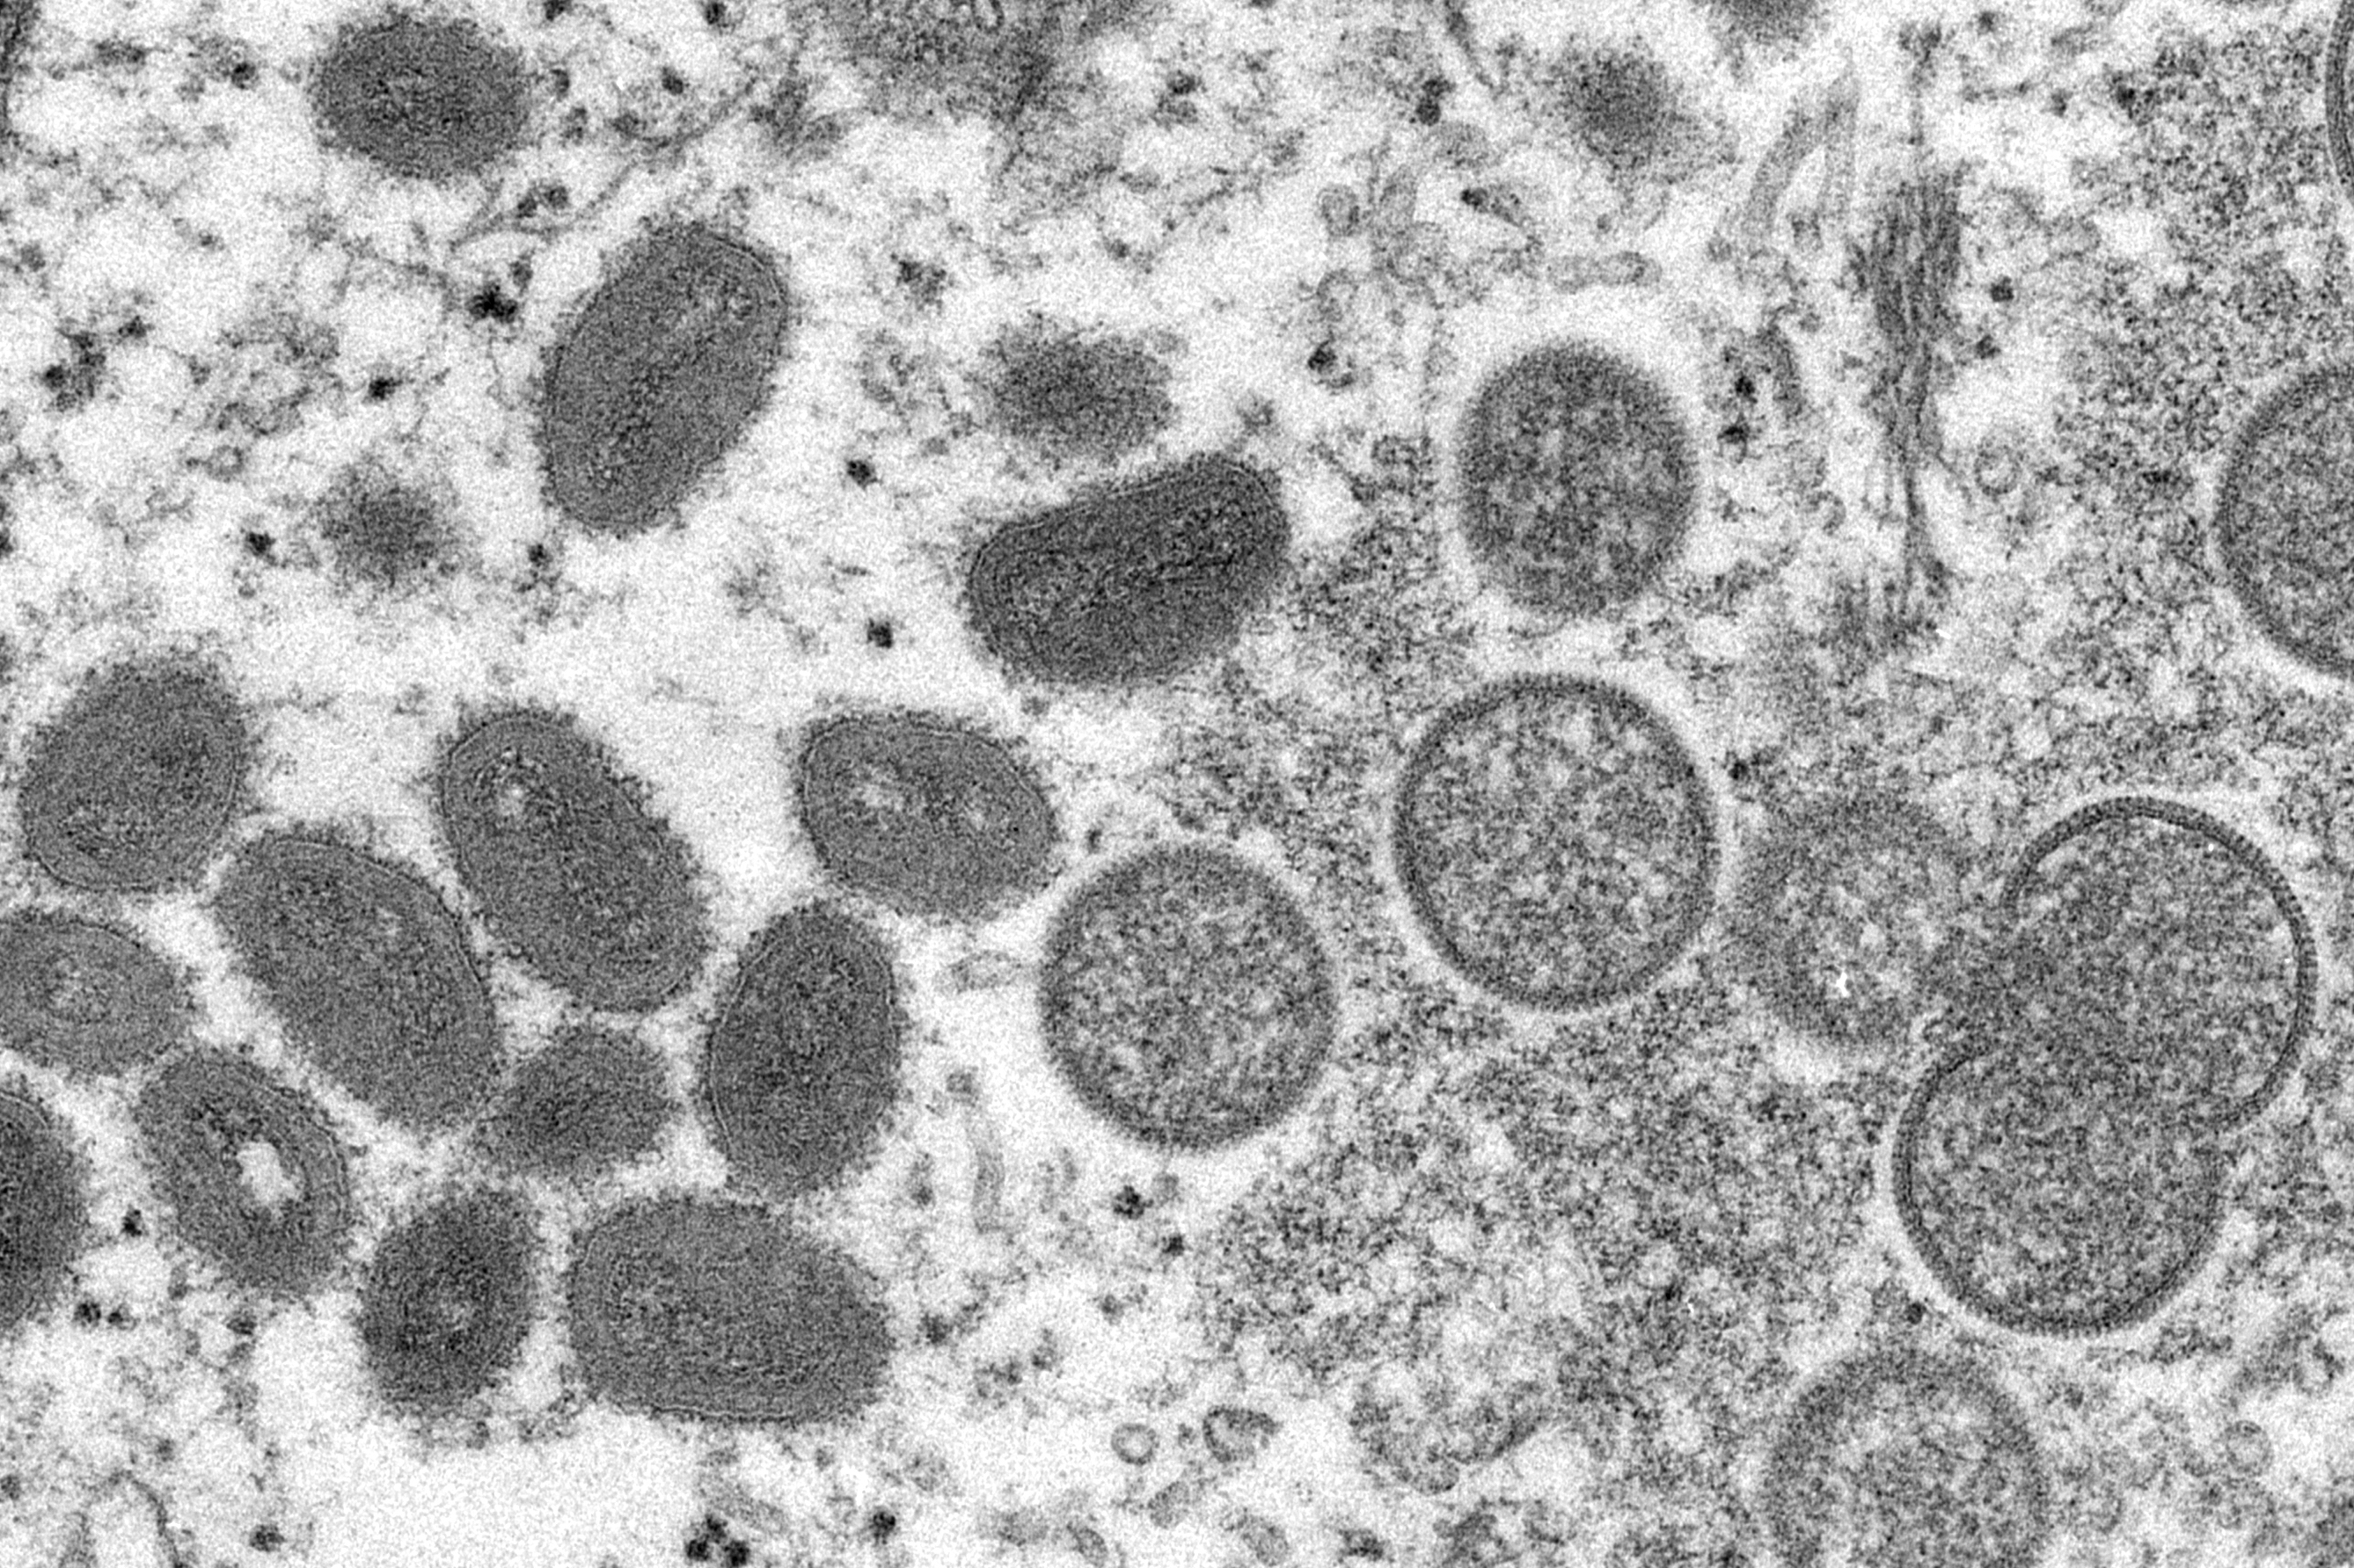 Imagen microscpica de los viriones de la viruela del mono, tomada en 2003.